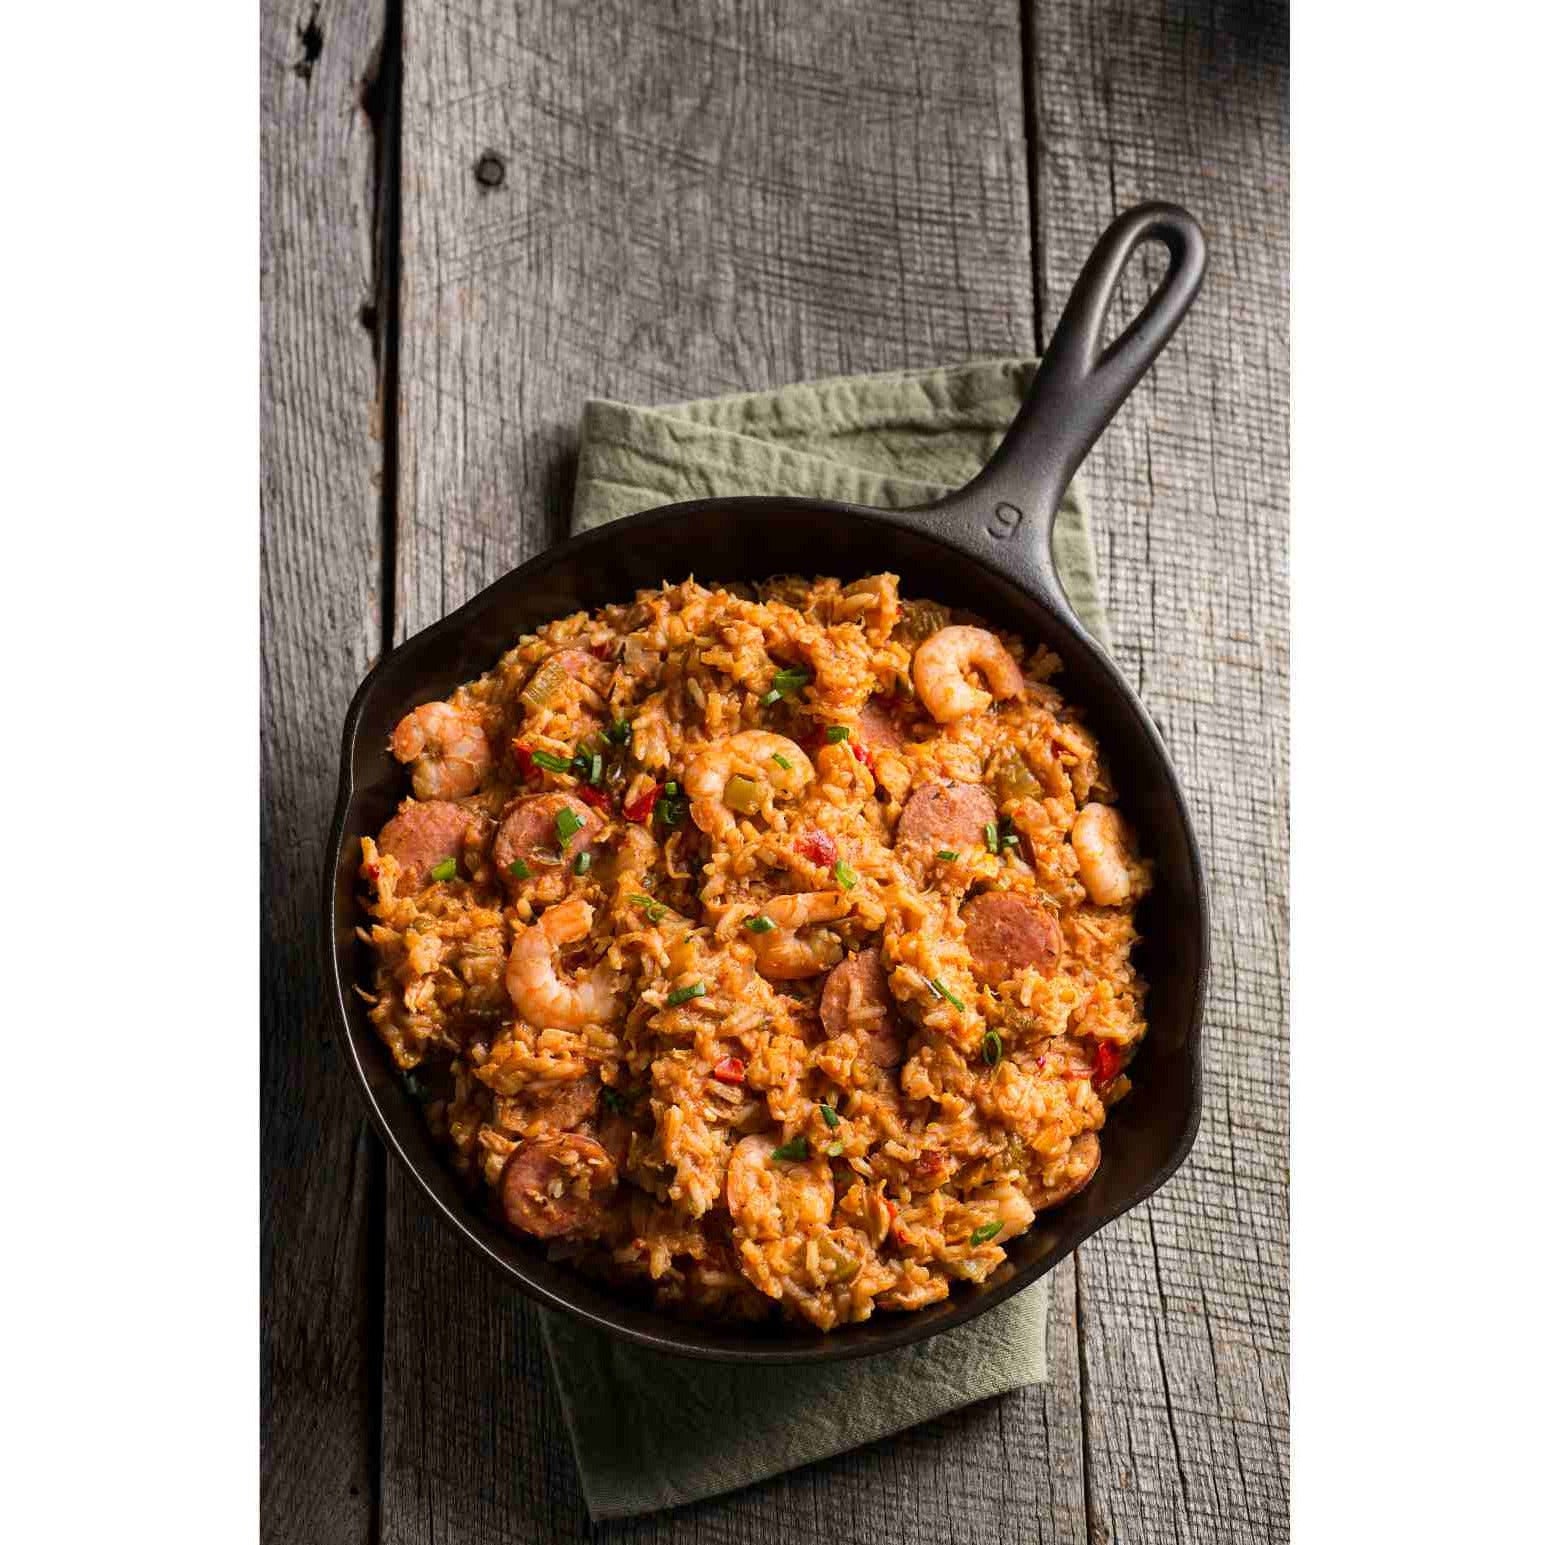 Jambalaya Skillet Meal with rice and seasoning - Kitcheneez Mixes & More!